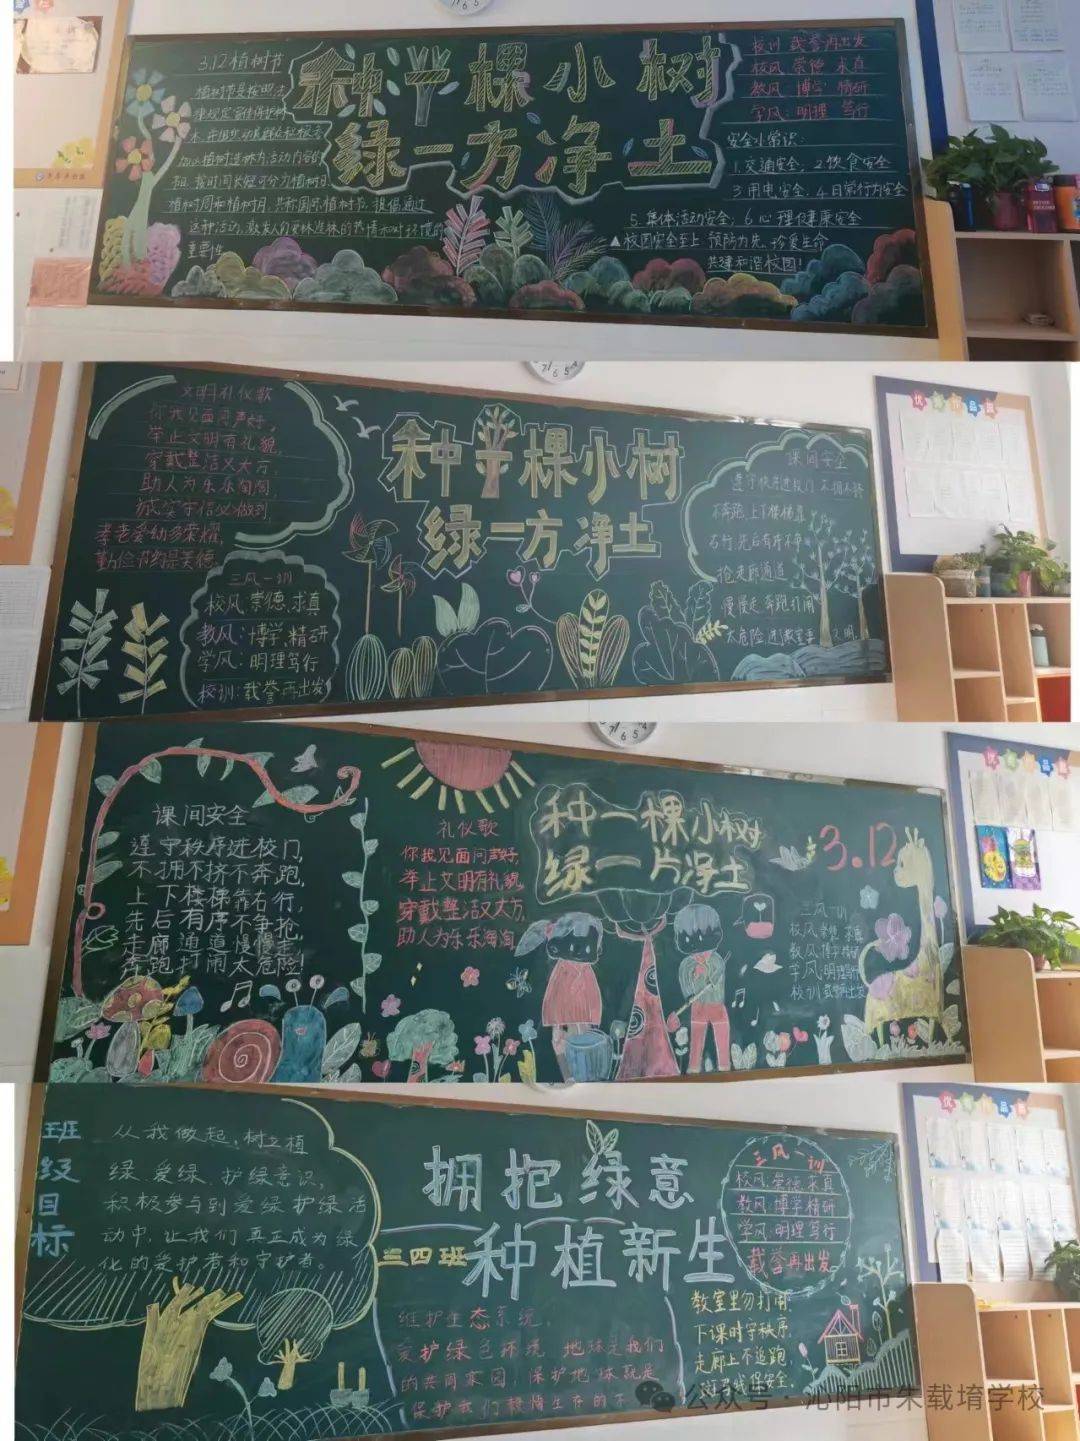 惊蛰过,春分临沁阳市朱载堉学校开展了植树节黑板报活动